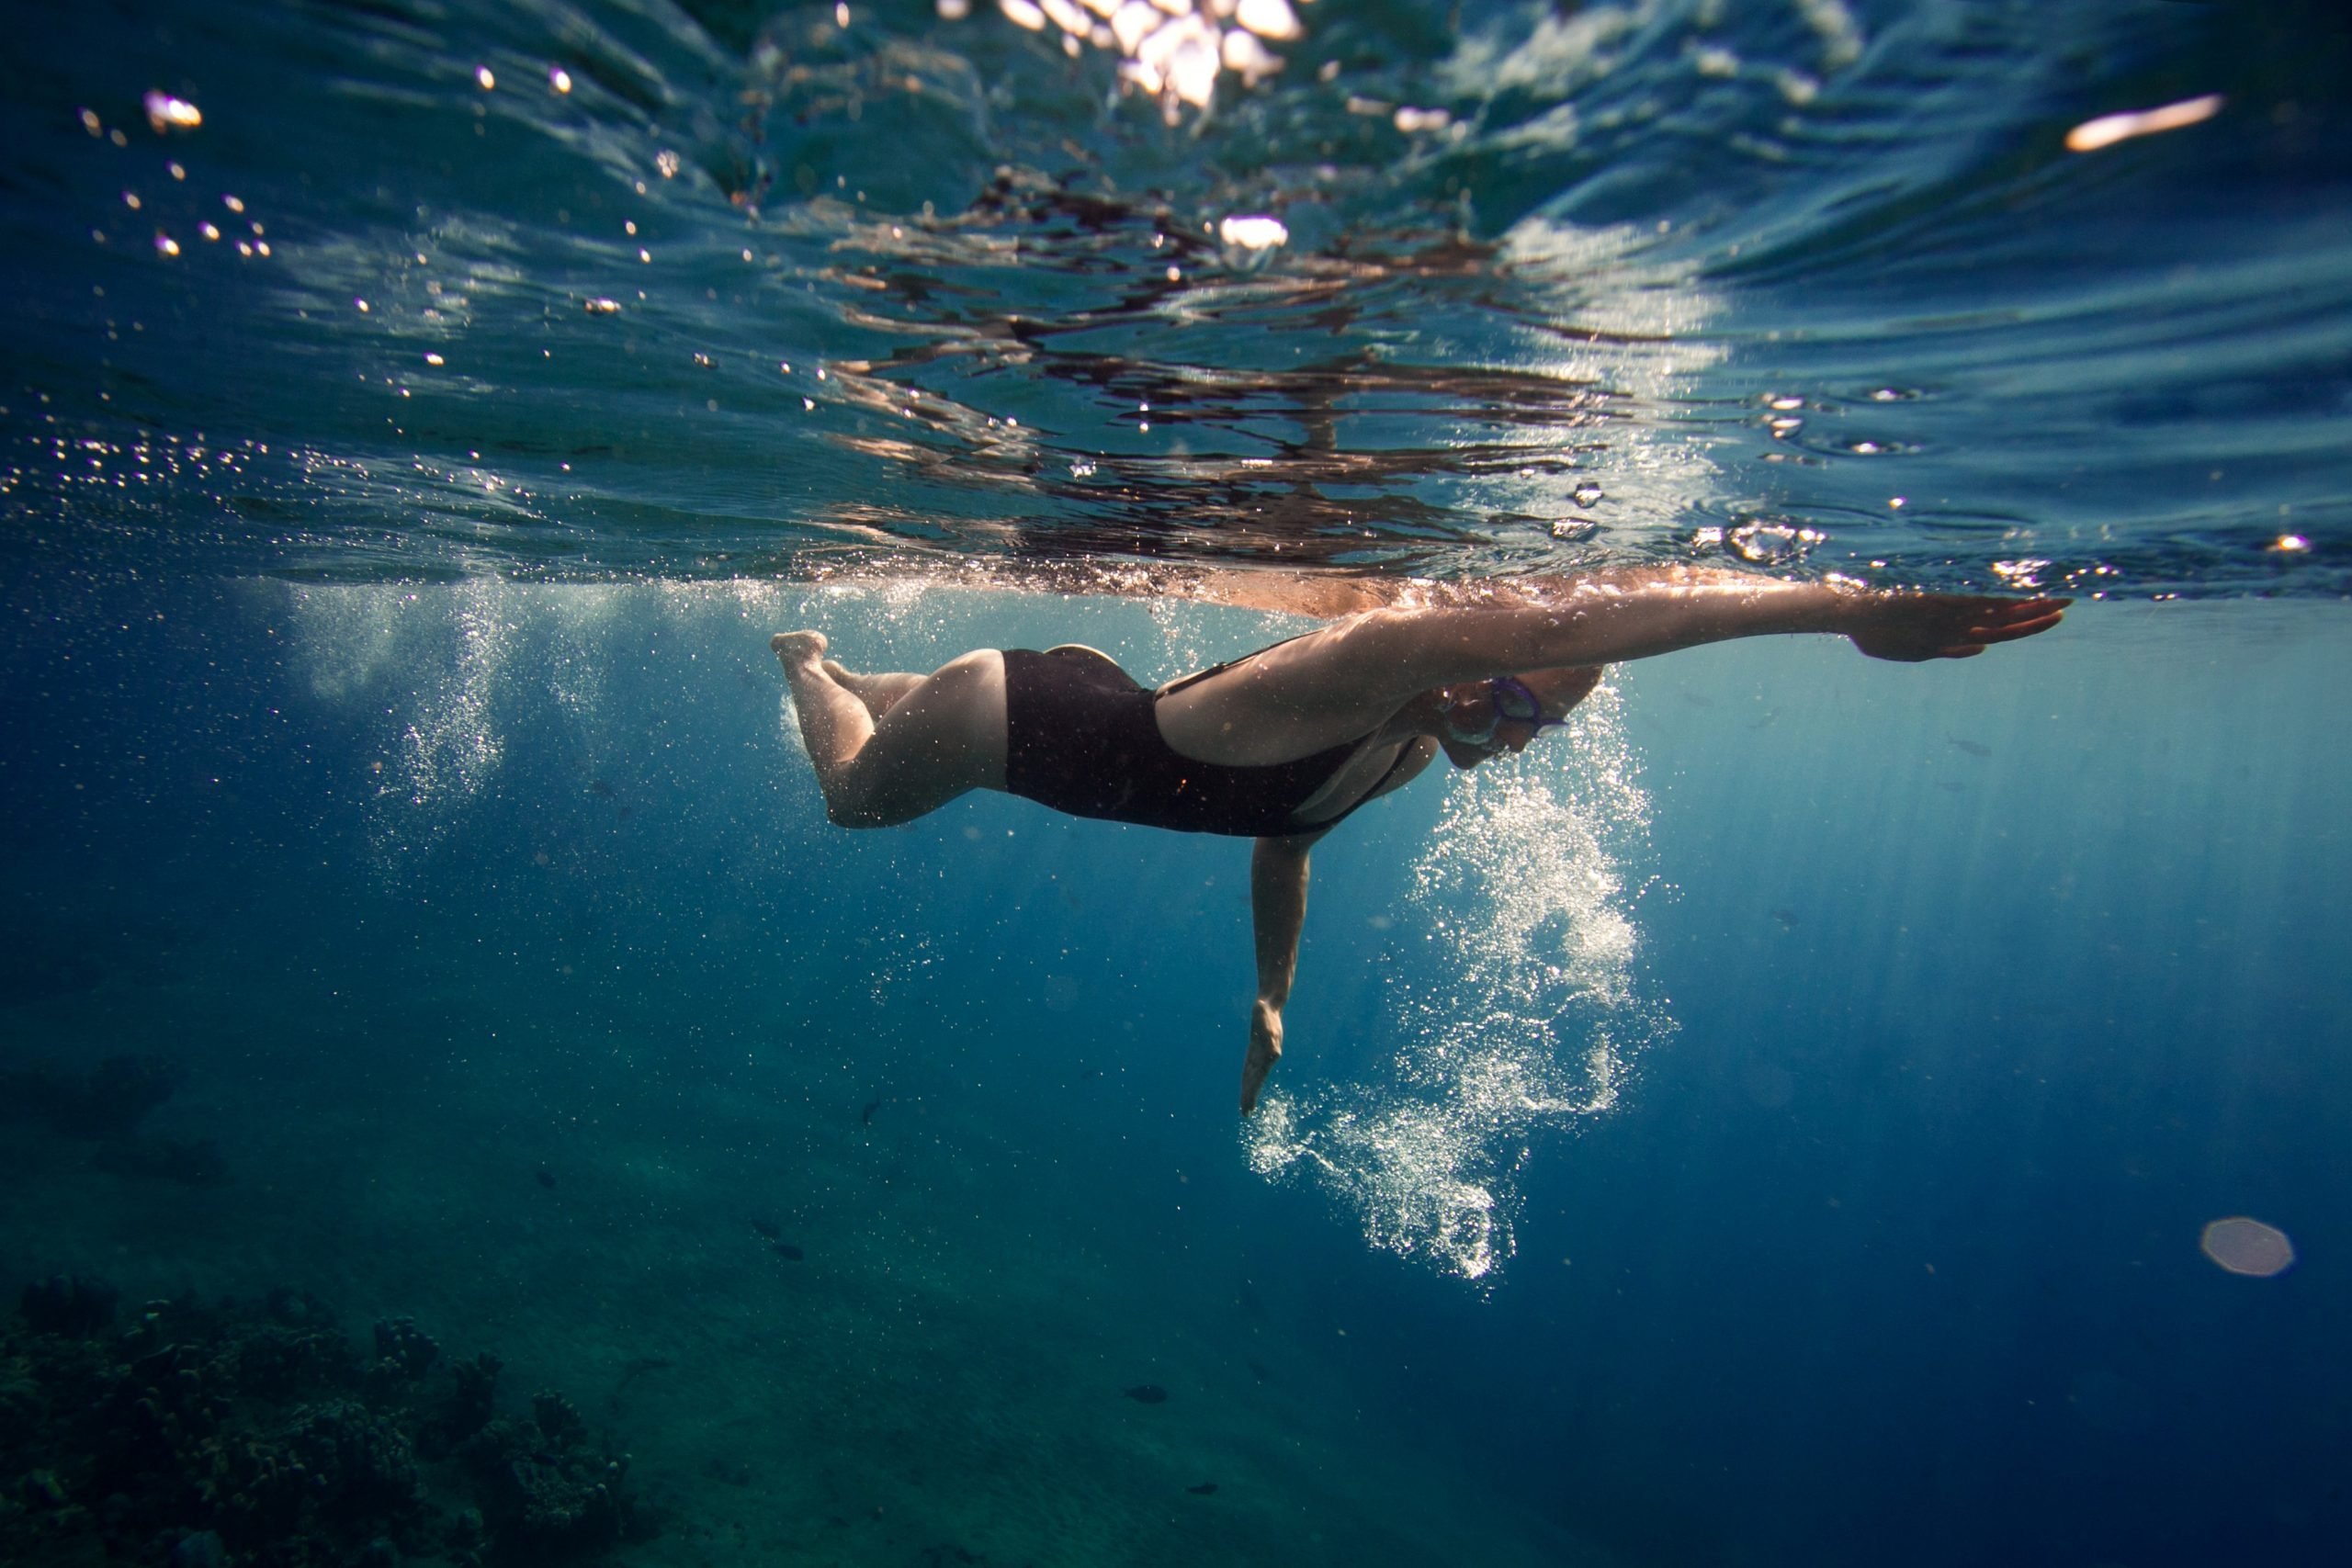 Κολύμπι: Η κολύμβηση είναι θεραπευτική κι η επιστήμη δίνει τις δικές της εκτιμήσεις [vid]